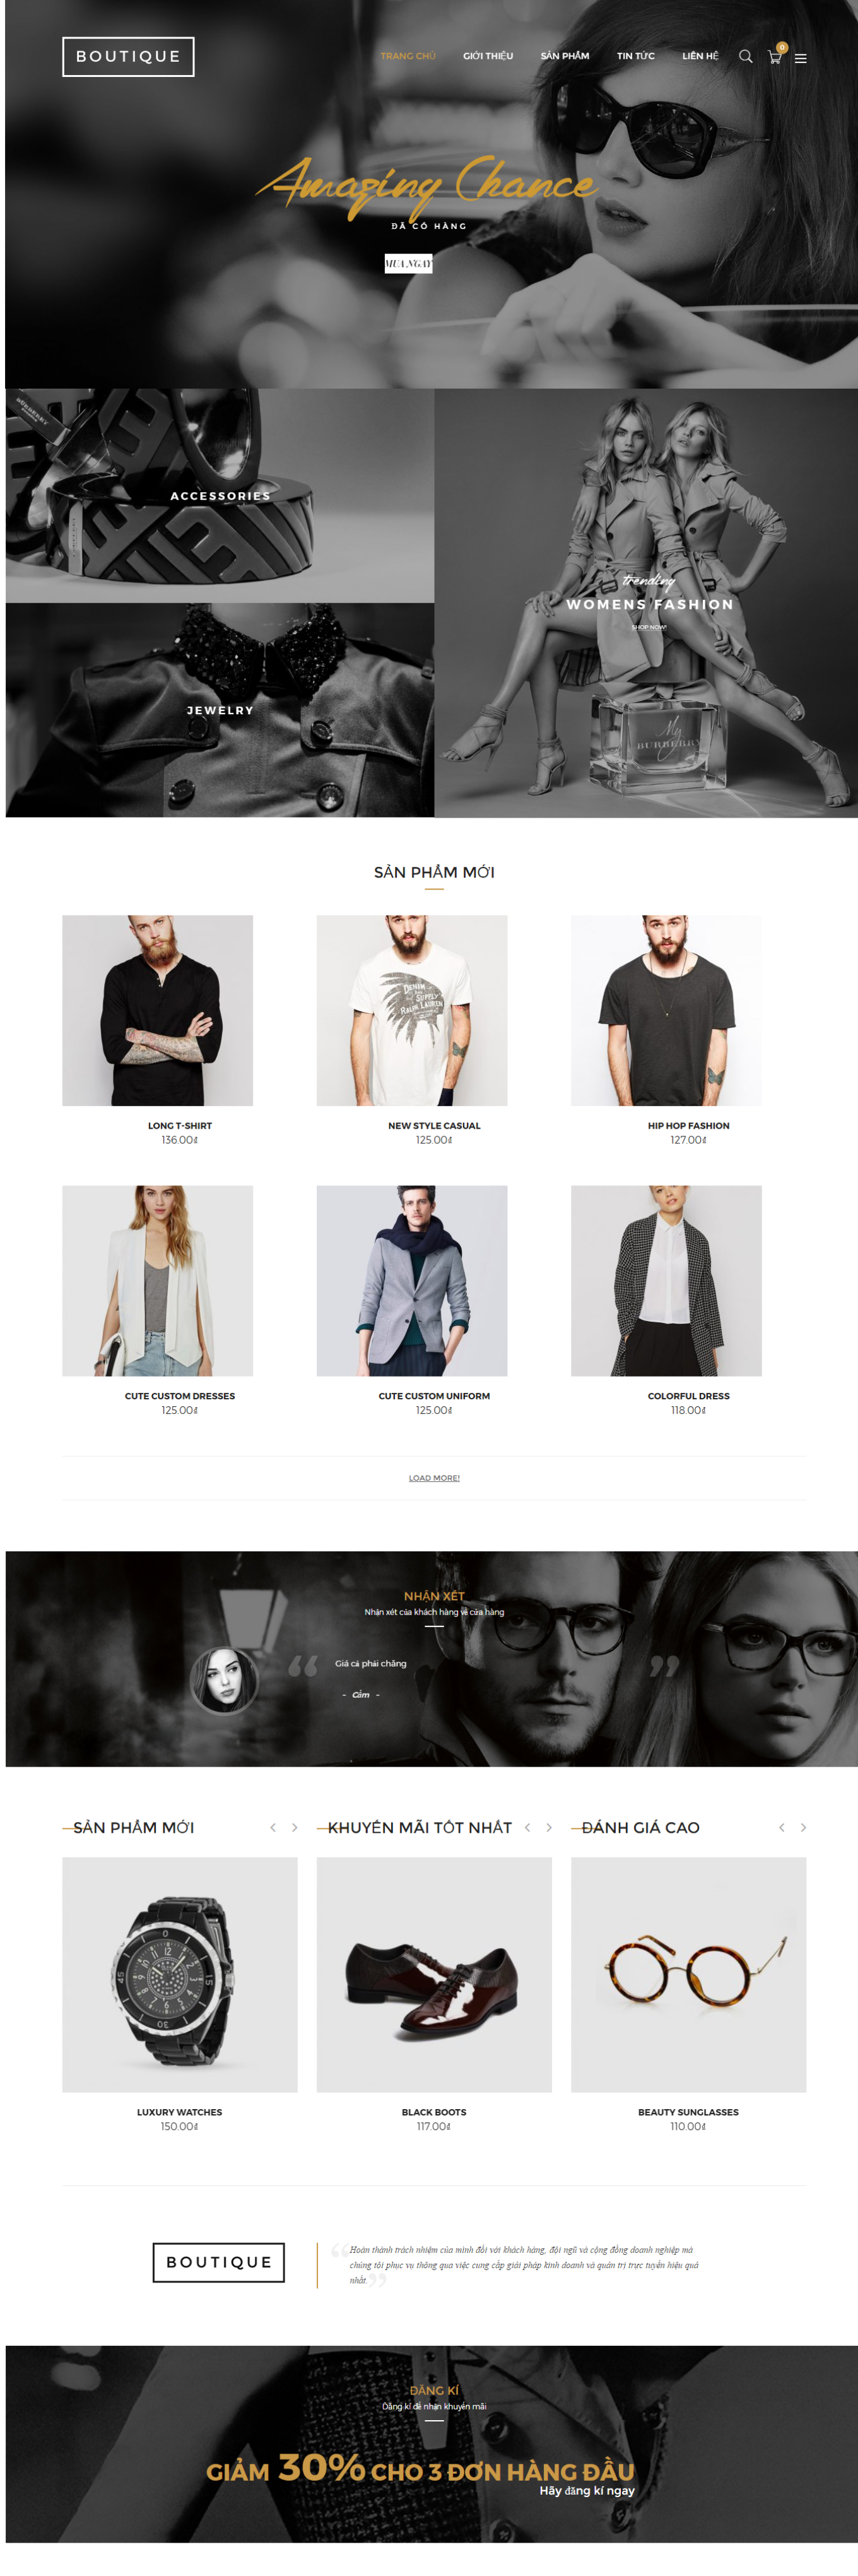 Mẫu website bán hàng thời trang - Boutique19